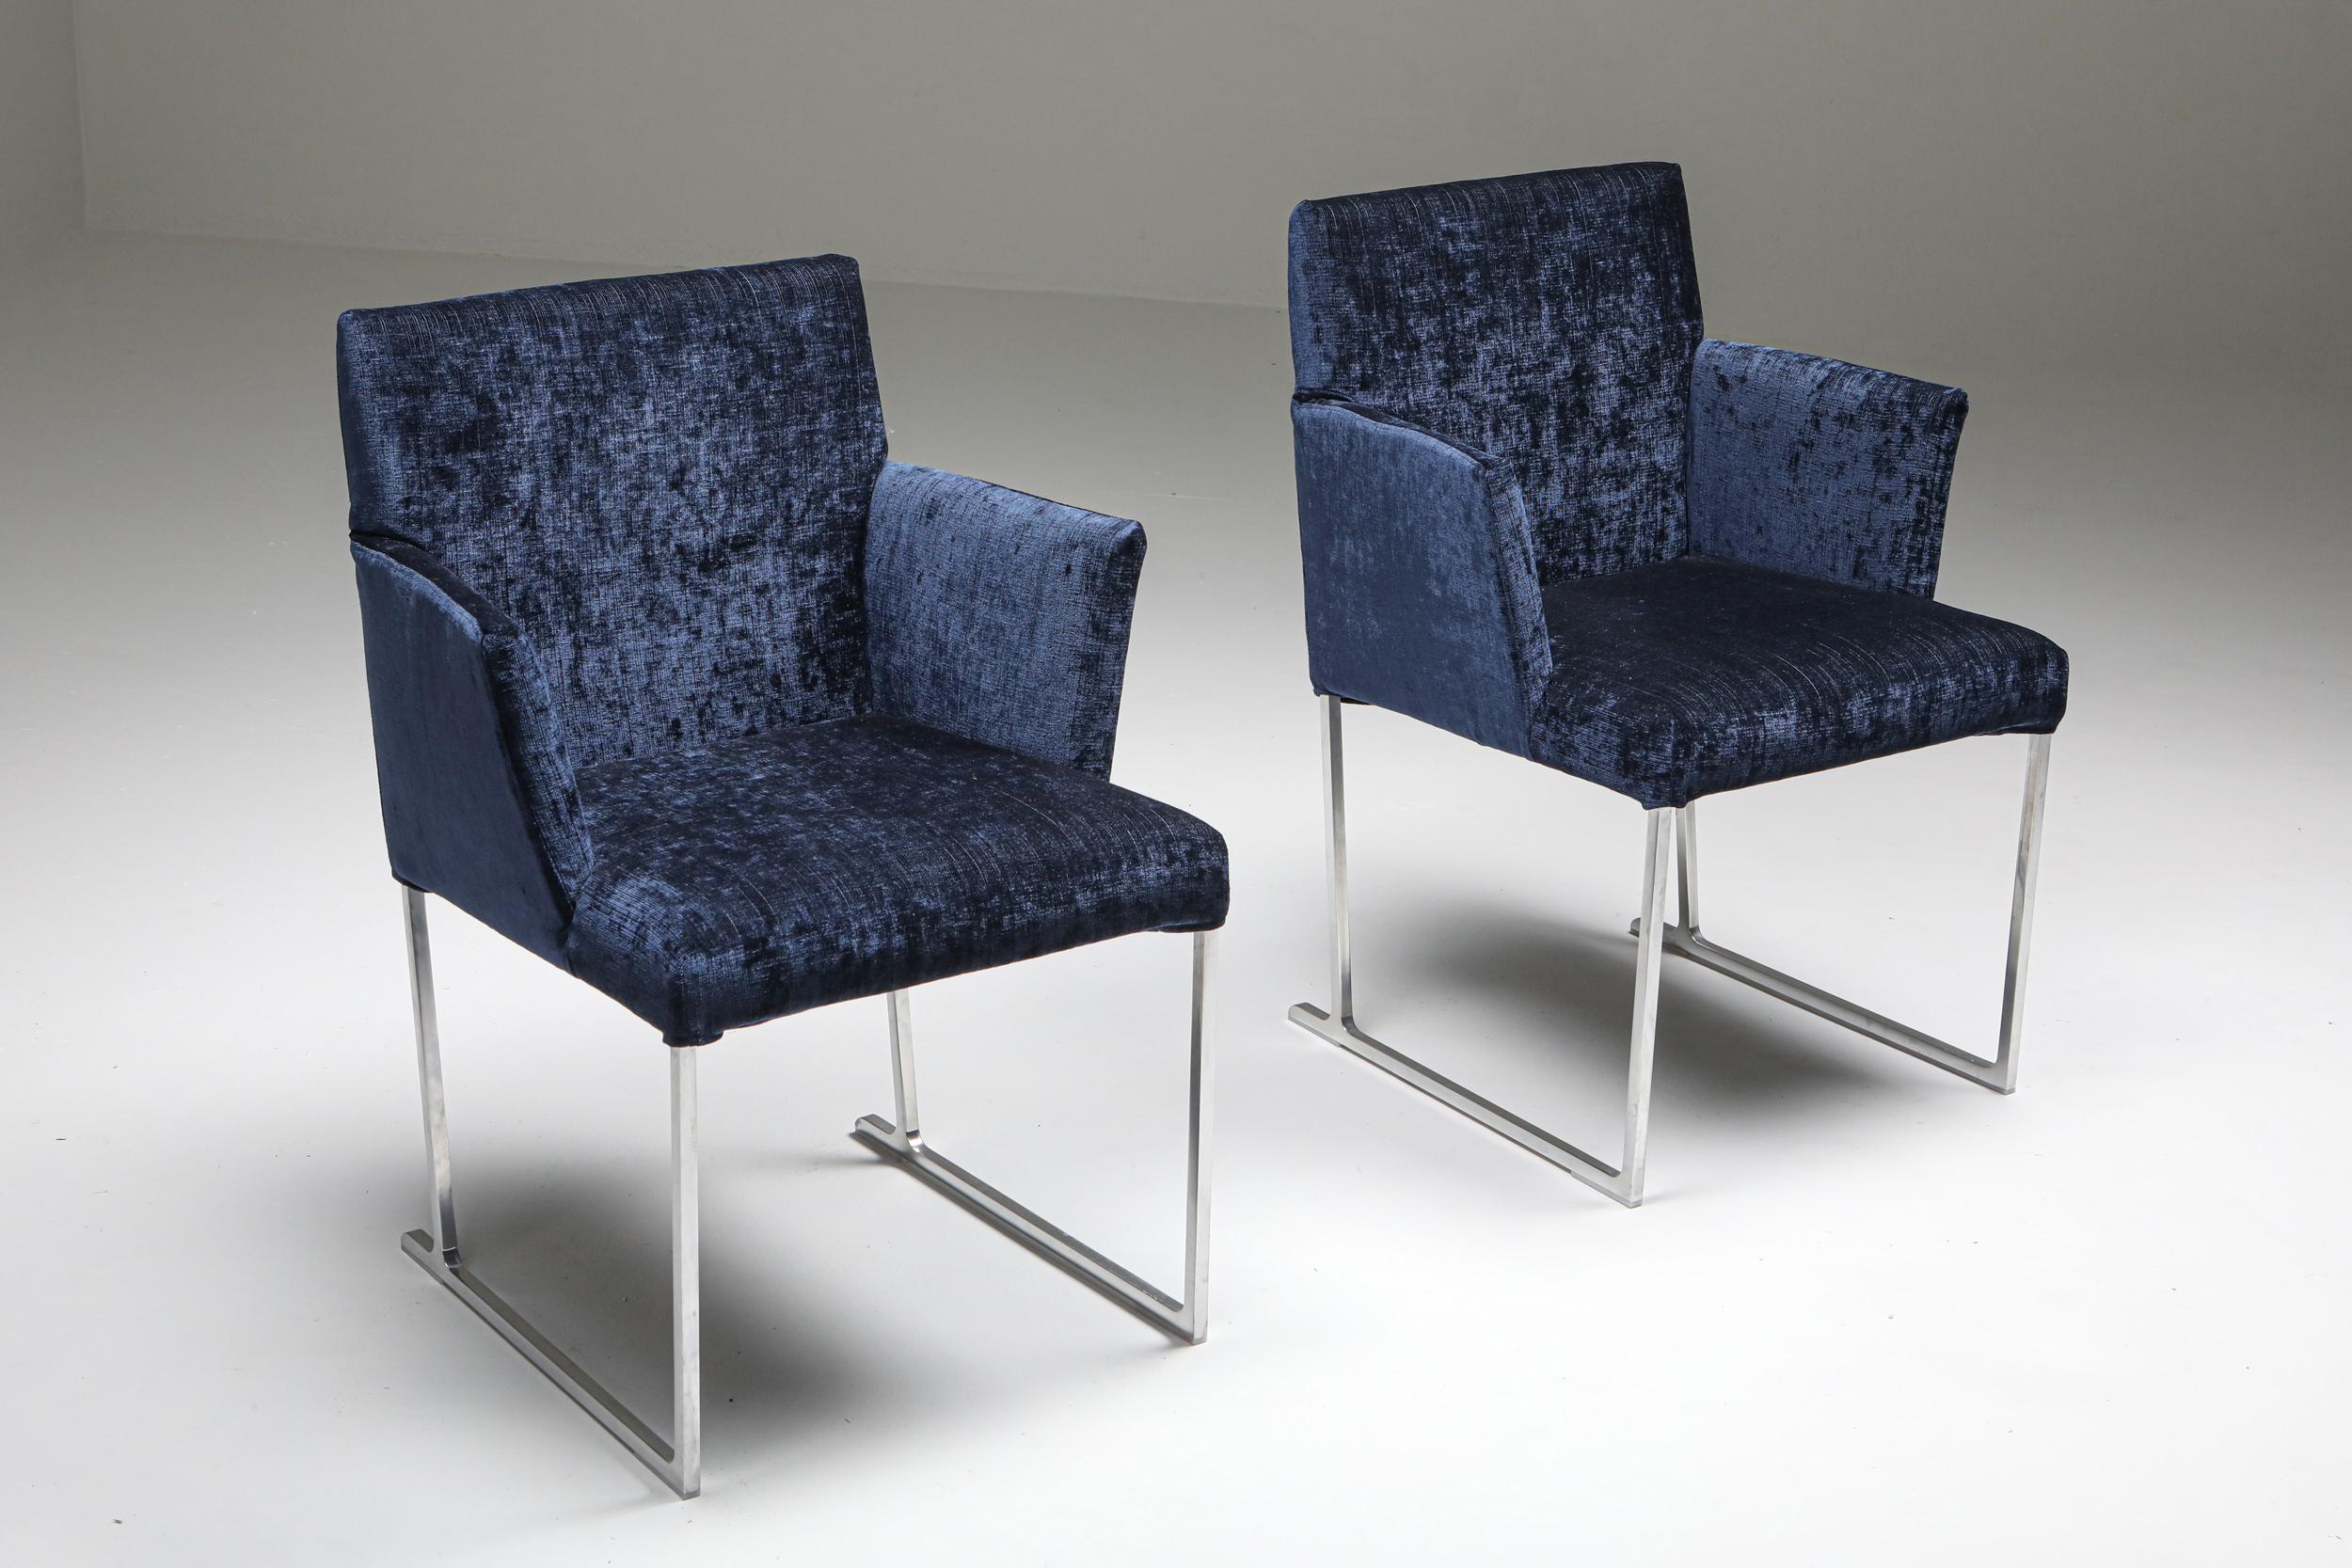 Contemporary Solo Chairs by Antonio Citterio for Maxalto